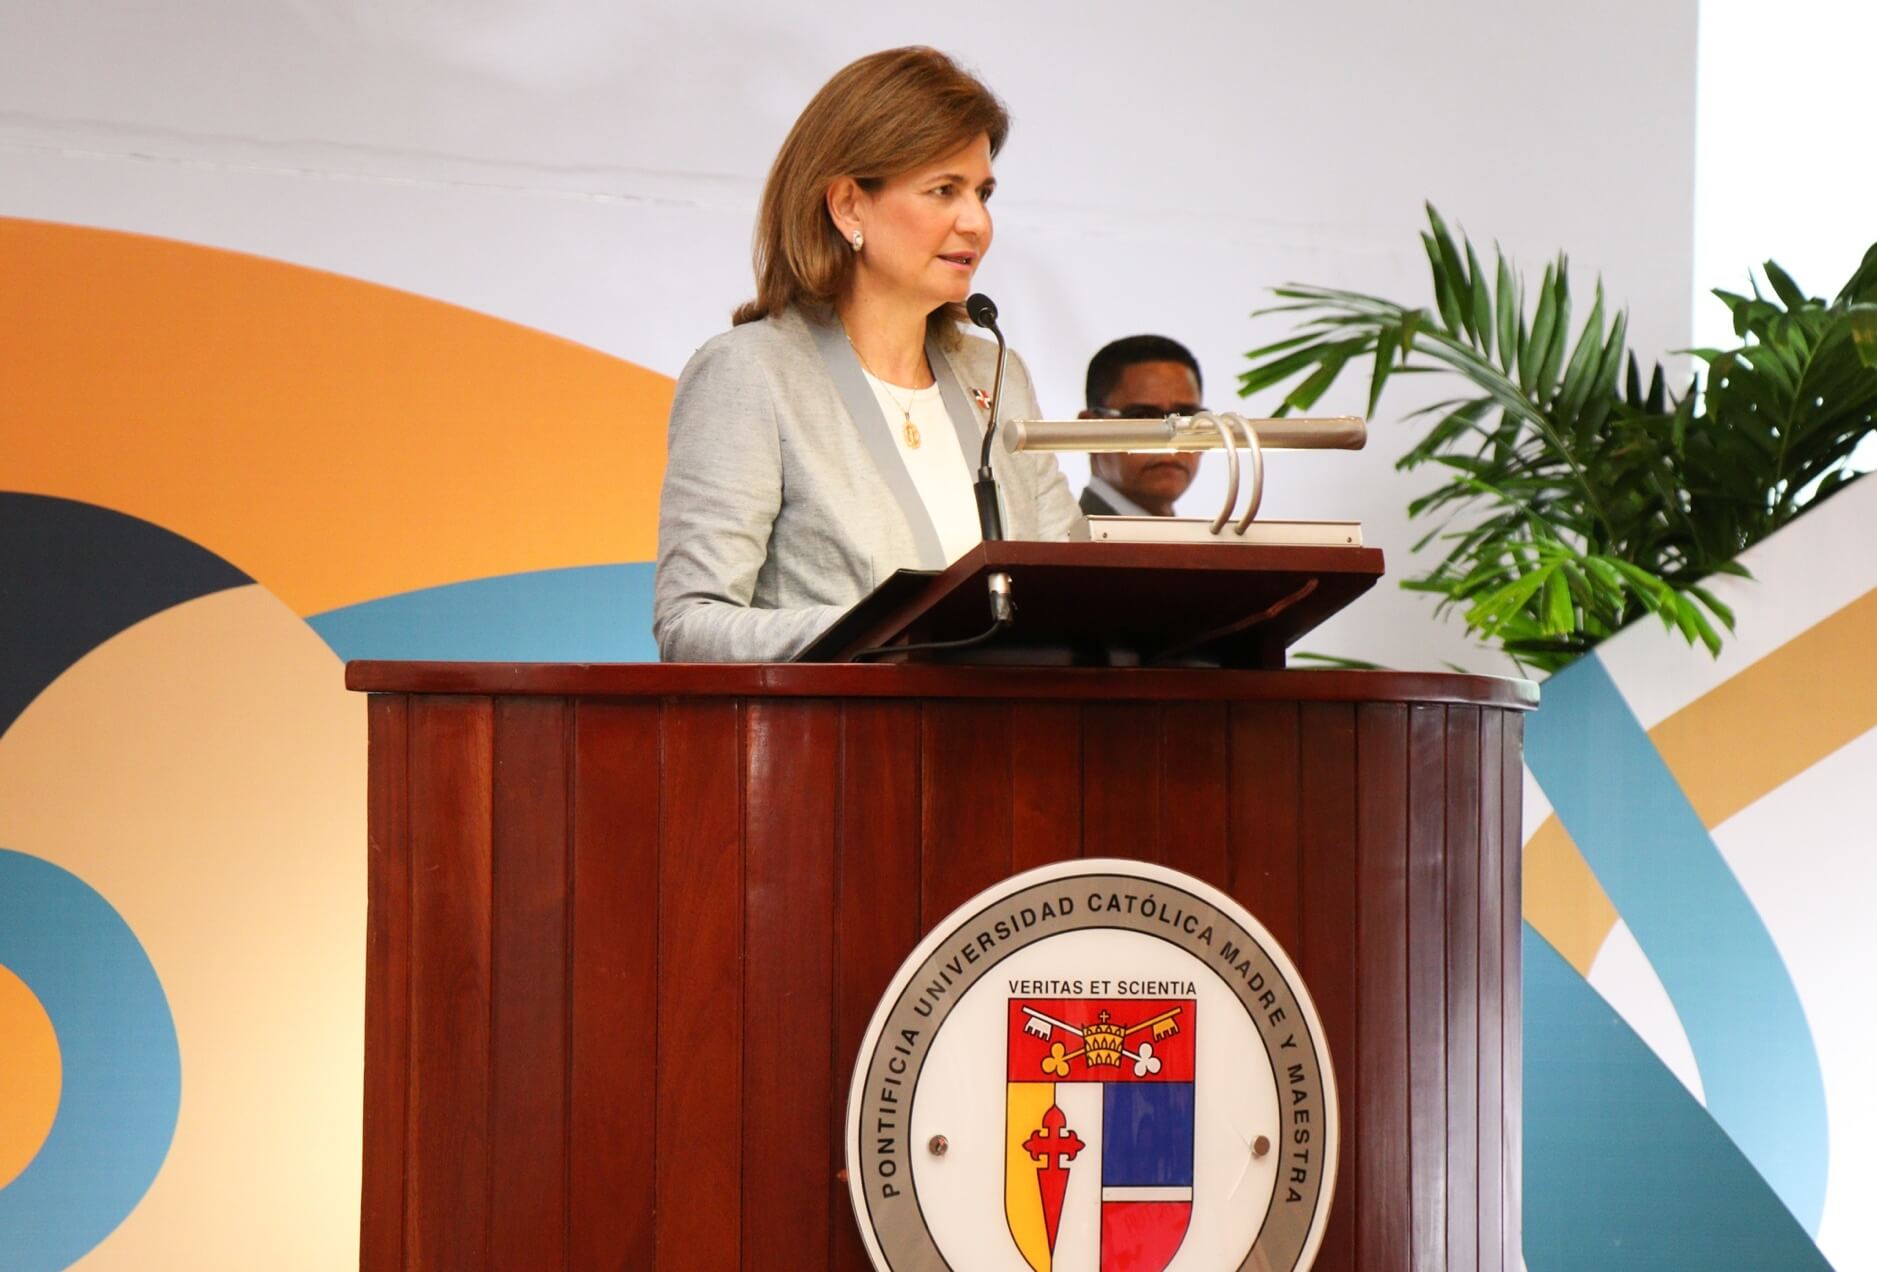 La vicepresidenta constitucional de la República Dominicana, Raquel Peña, subió al escenario con su charla Magistral, "Diseña tu vida, tu proyecto más importante"